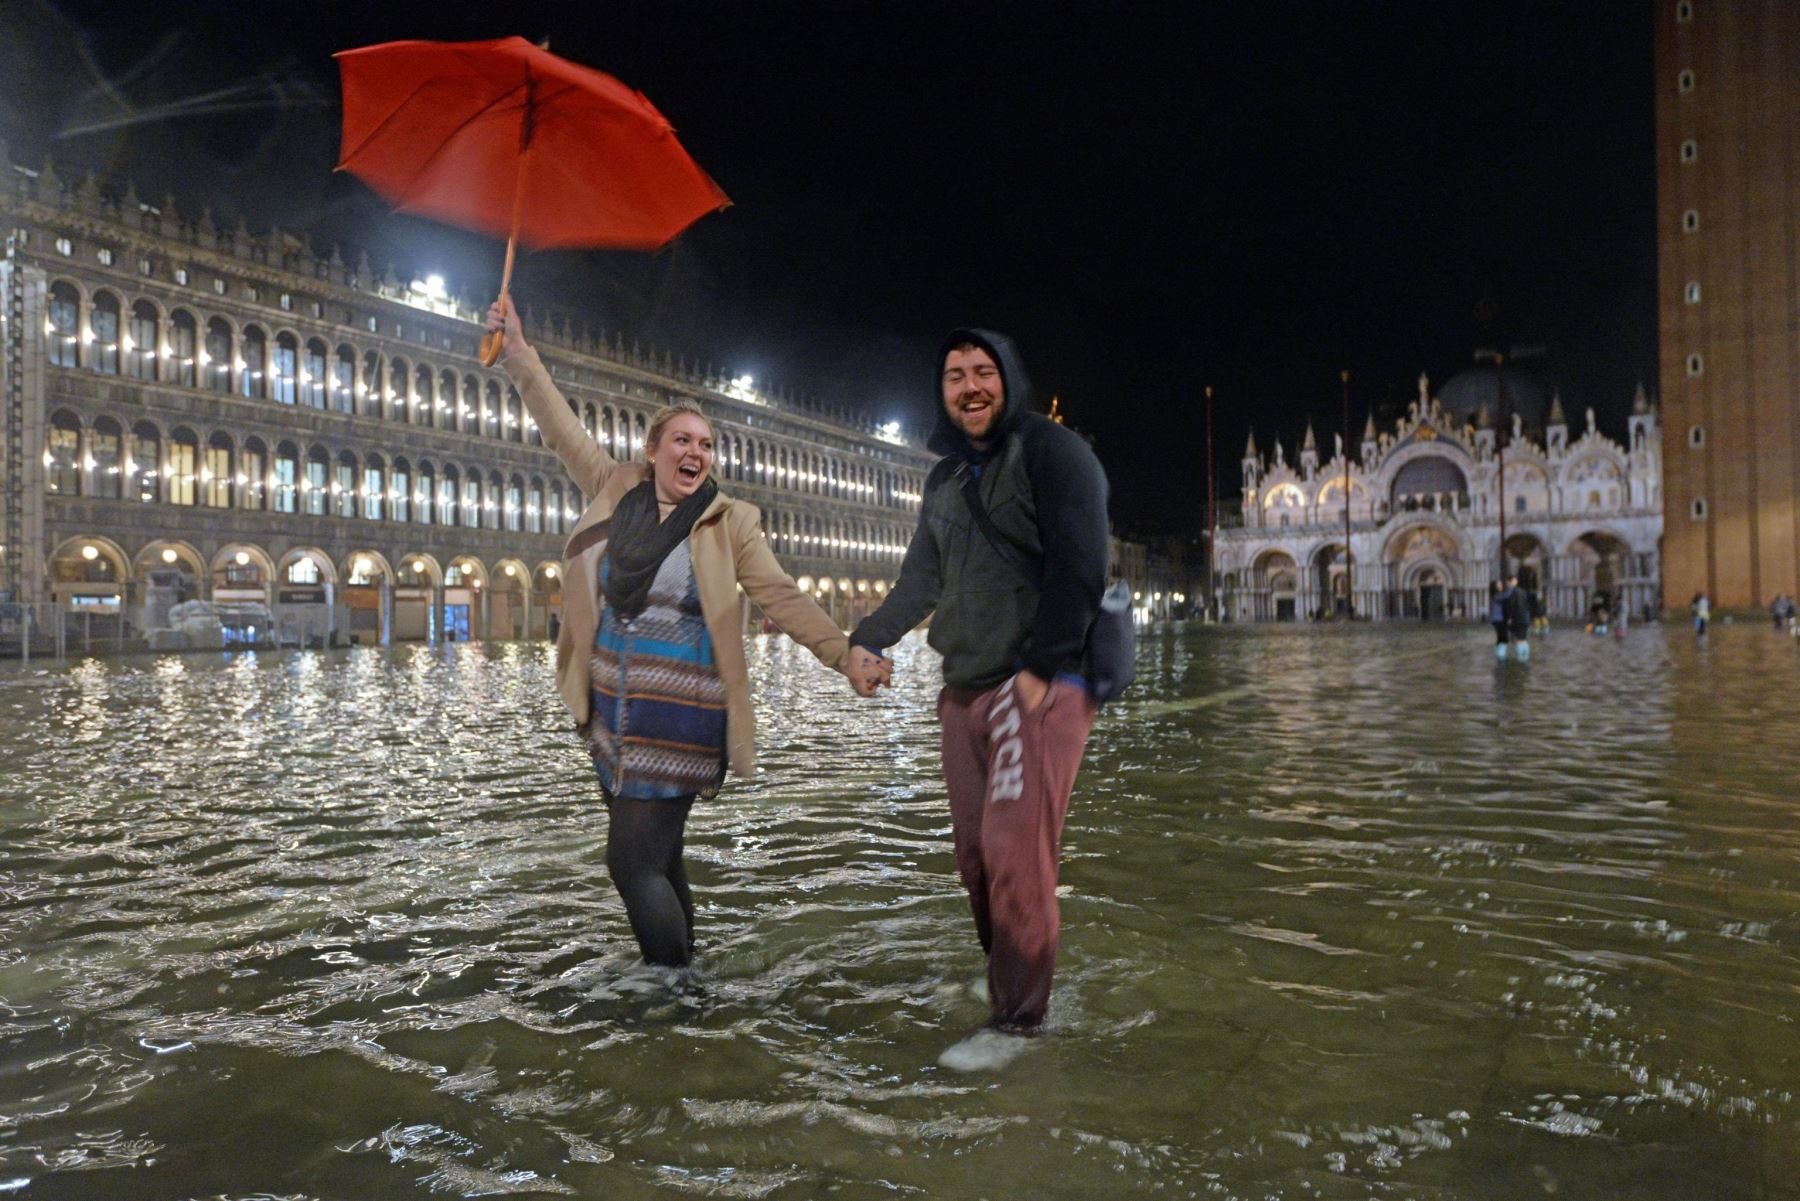 Dos turistas posan para una fotografía con los pies cubiertos de agua por las crecidas en la plaza de San Marco en Venecia. El agua llegó a 124 centímetros por encima del nivel del mar causando inundaciones en la ciudad de los canales. EFE/ Andrea Merola